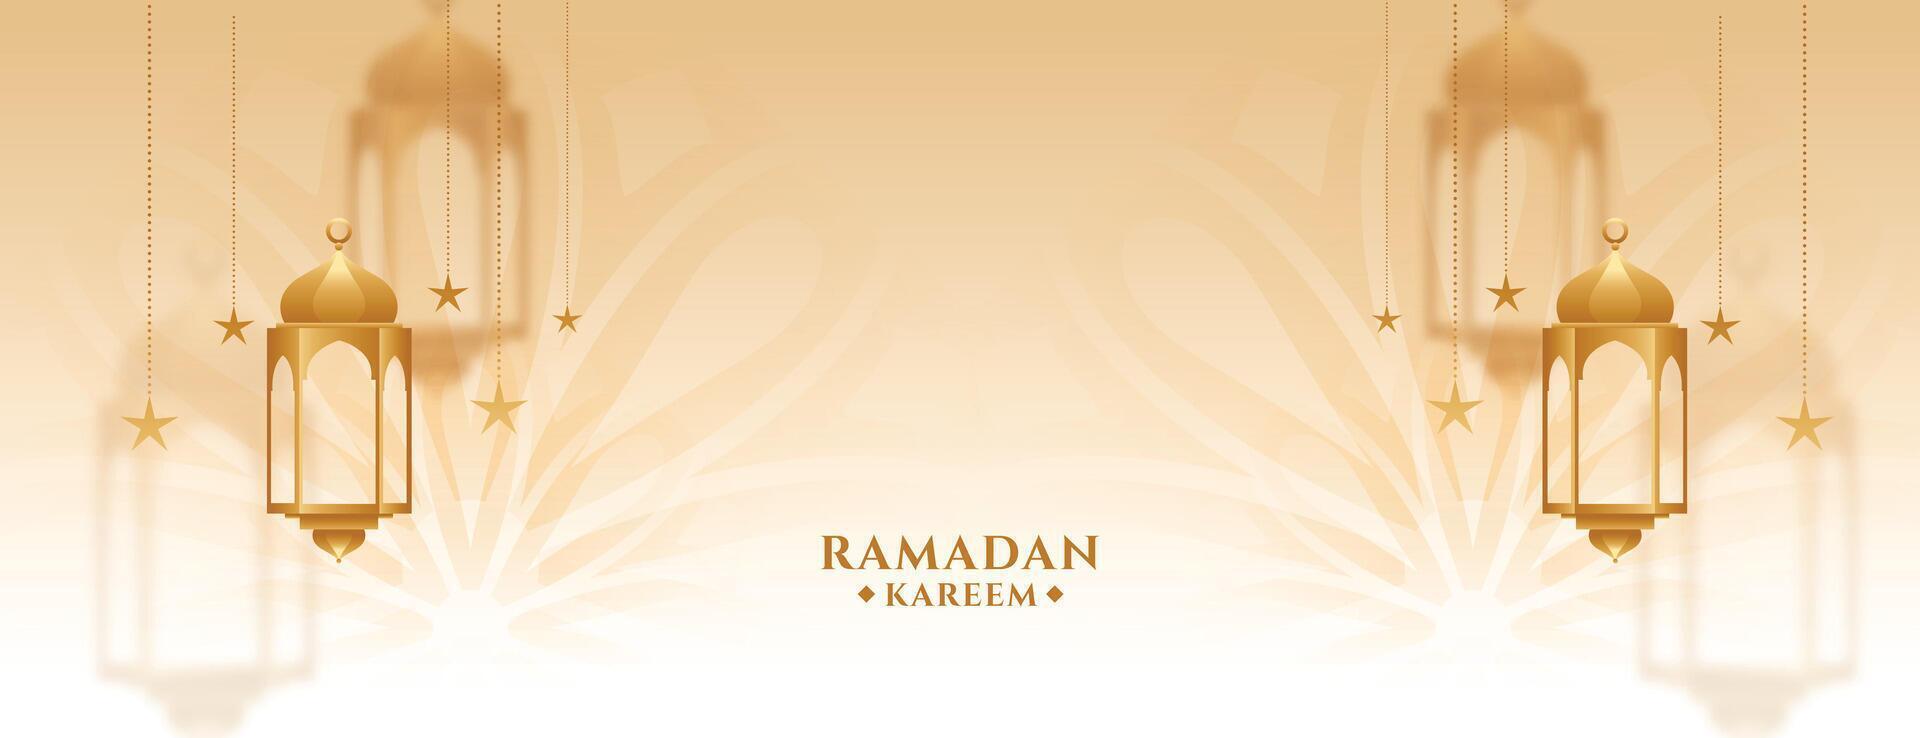 Ramadan kareem islamique style d'or bannière conception vecteur